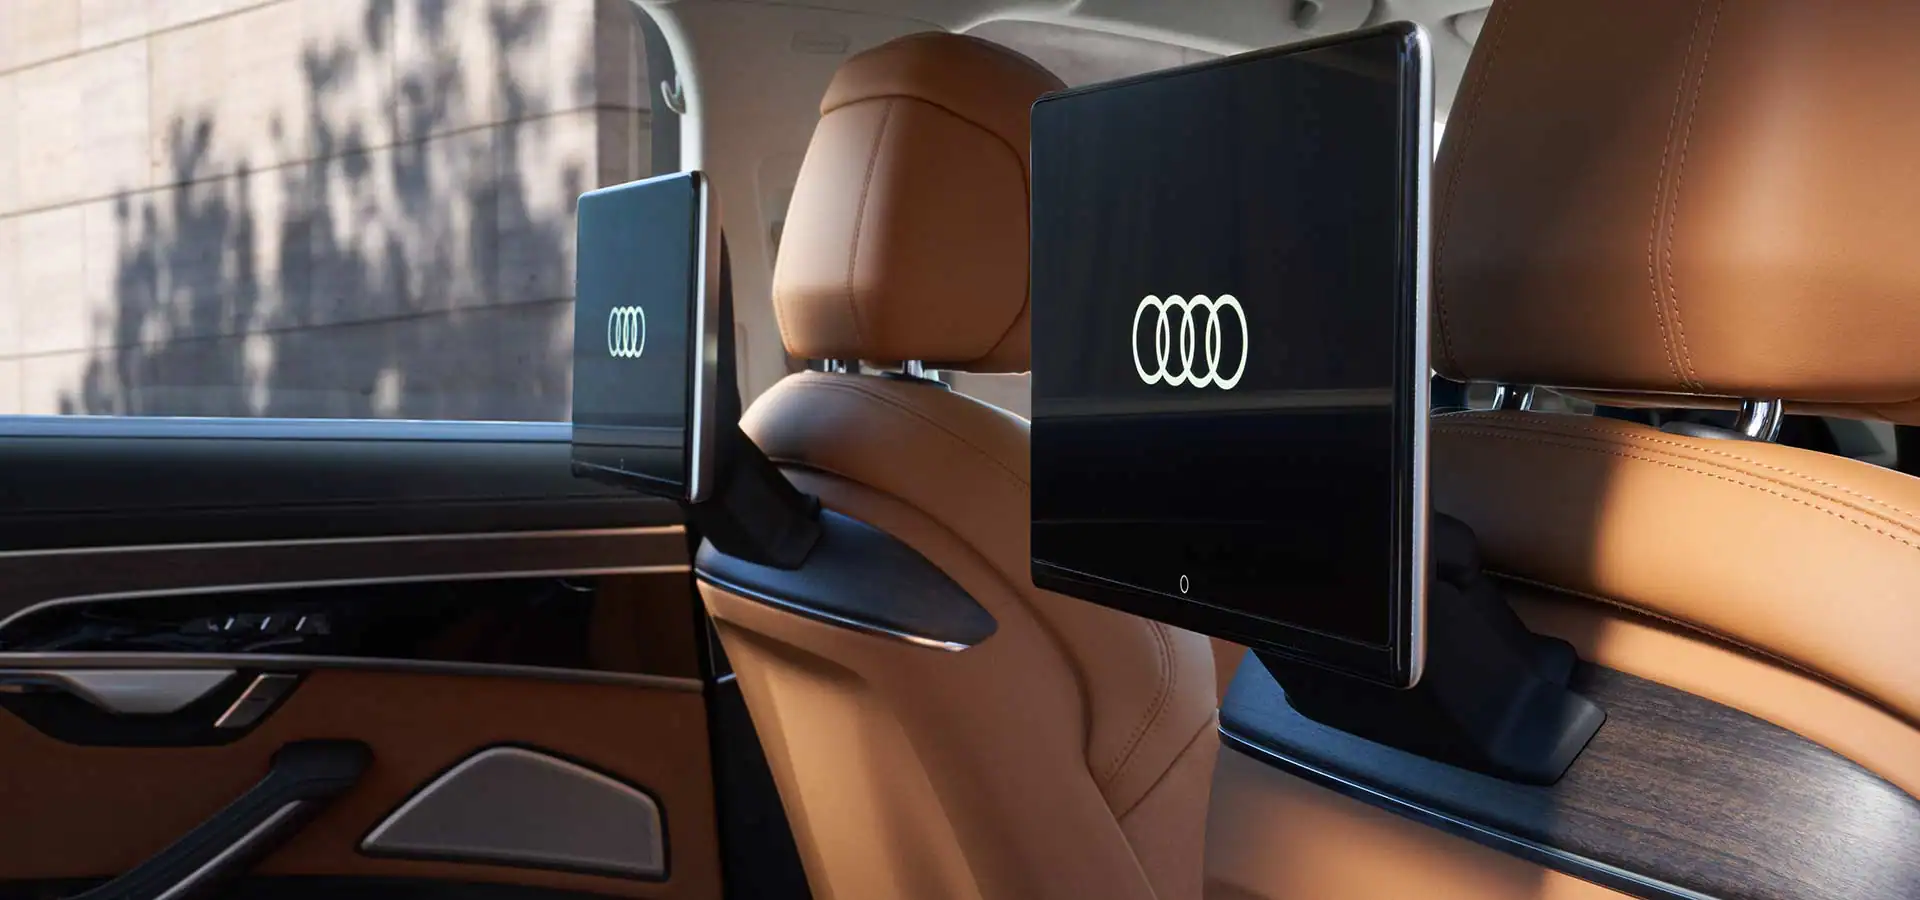 Audi A8 L interior rear passenger displays